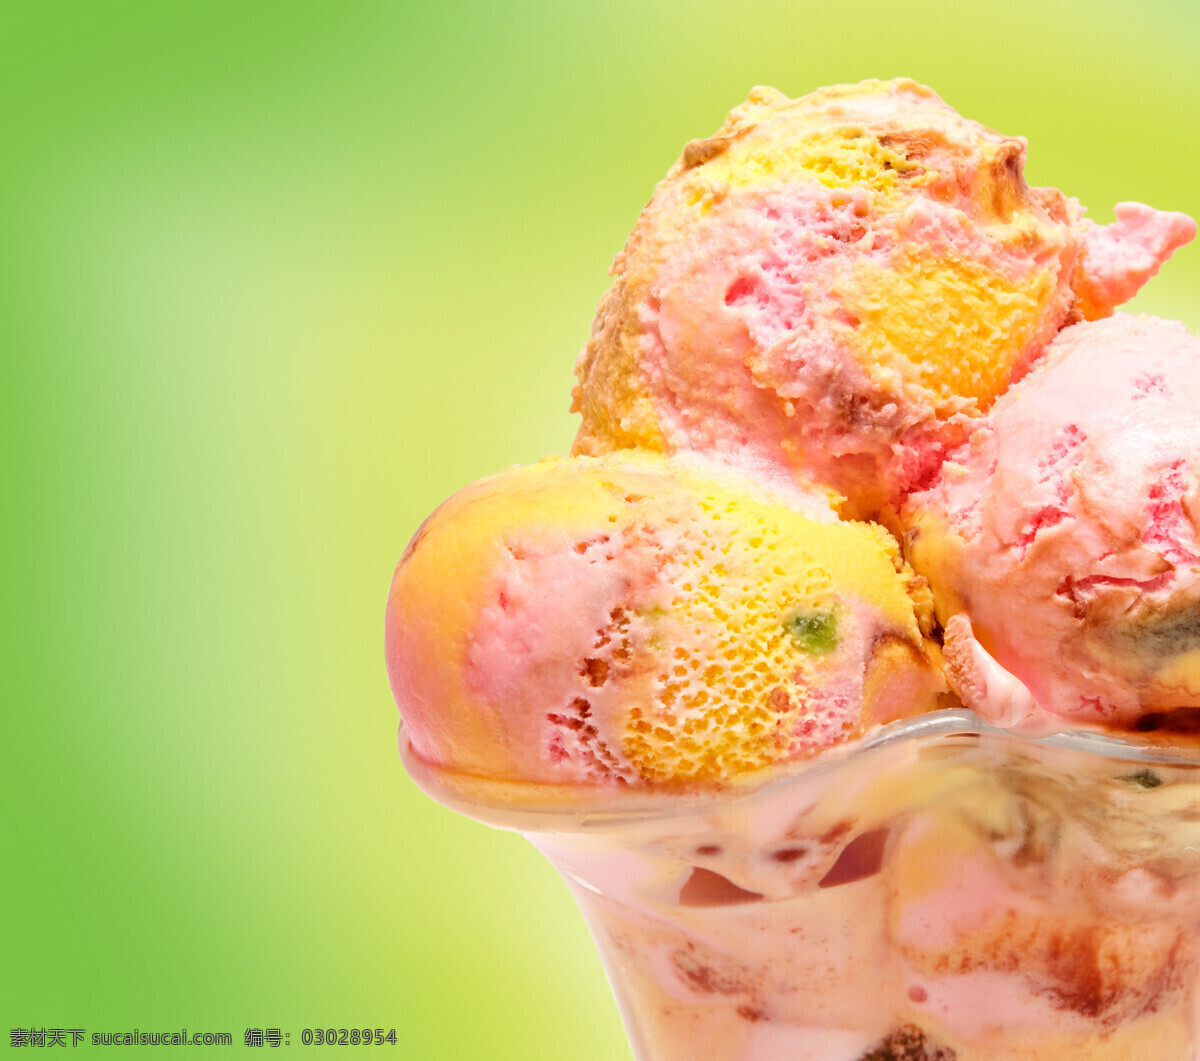 冰激凌 美食 冰淇淋 甜品 美味 食物摄影 美食图片 餐饮美食